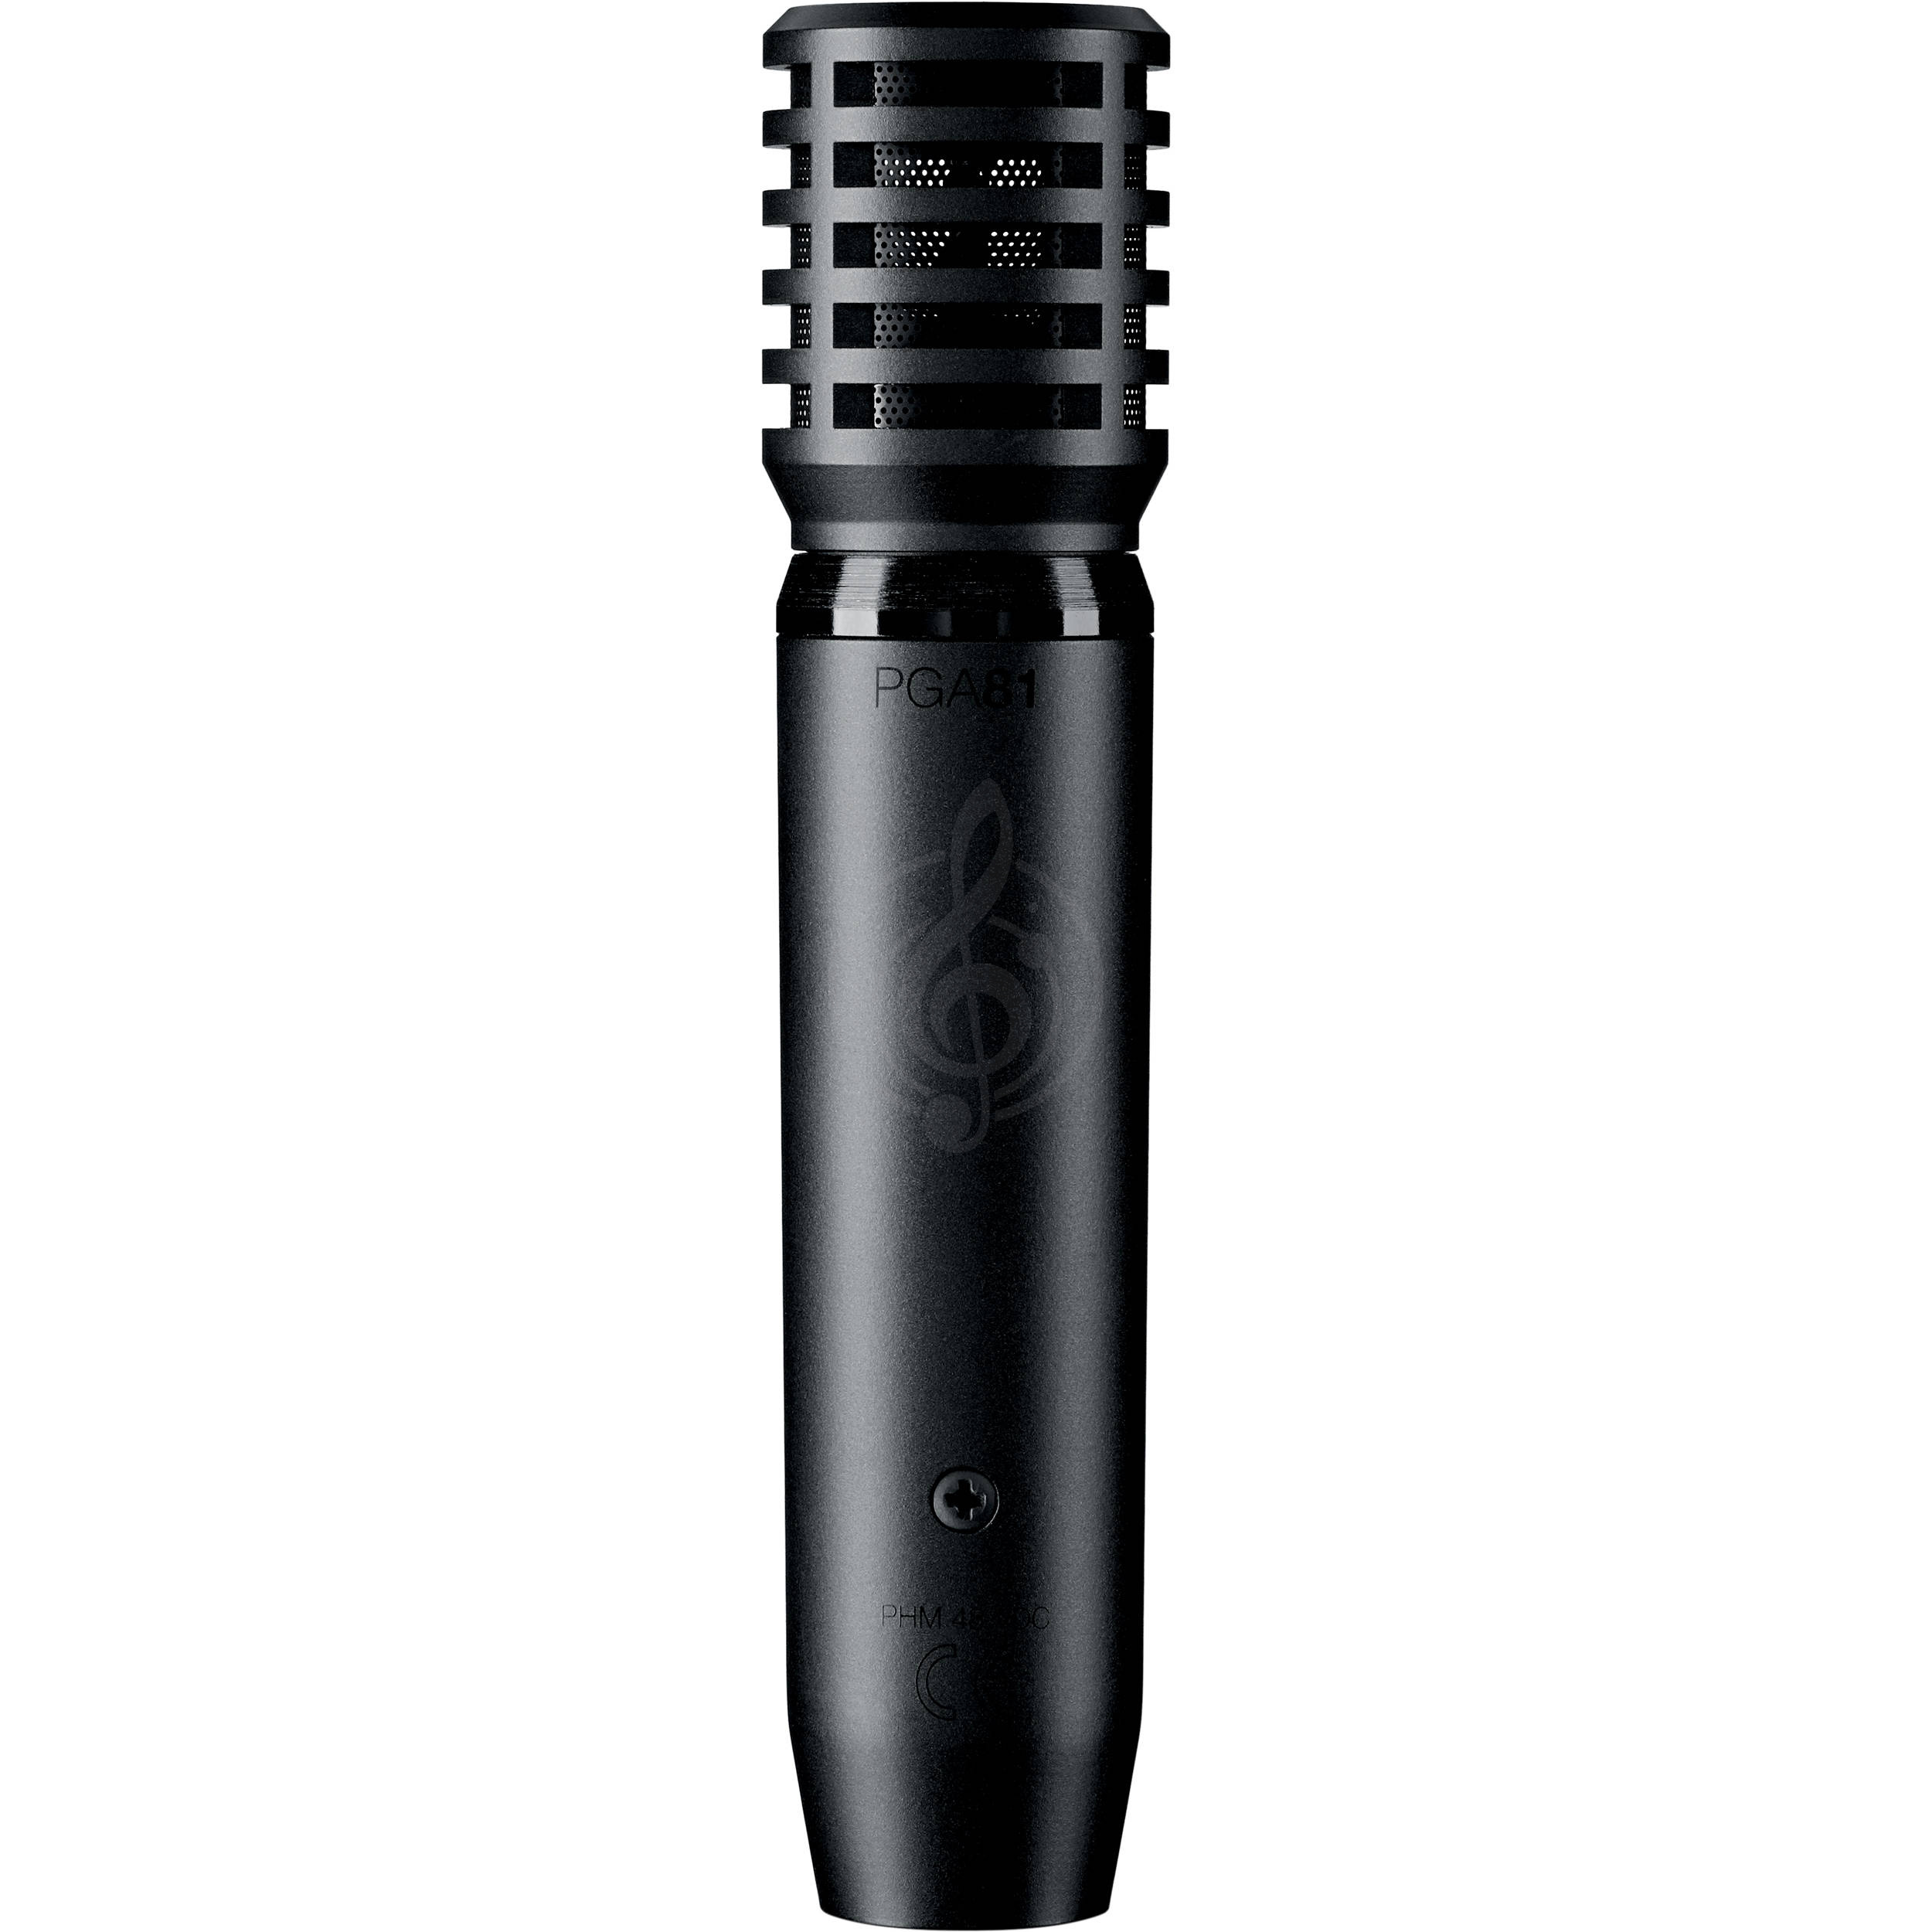 Инструментальный микрофон Инструментальные микрофоны Shure SHURE PGA81-XLR - кардиоидный конденсаторный инструментальный микрофон c выключателем PGA81-XLR - фото 1